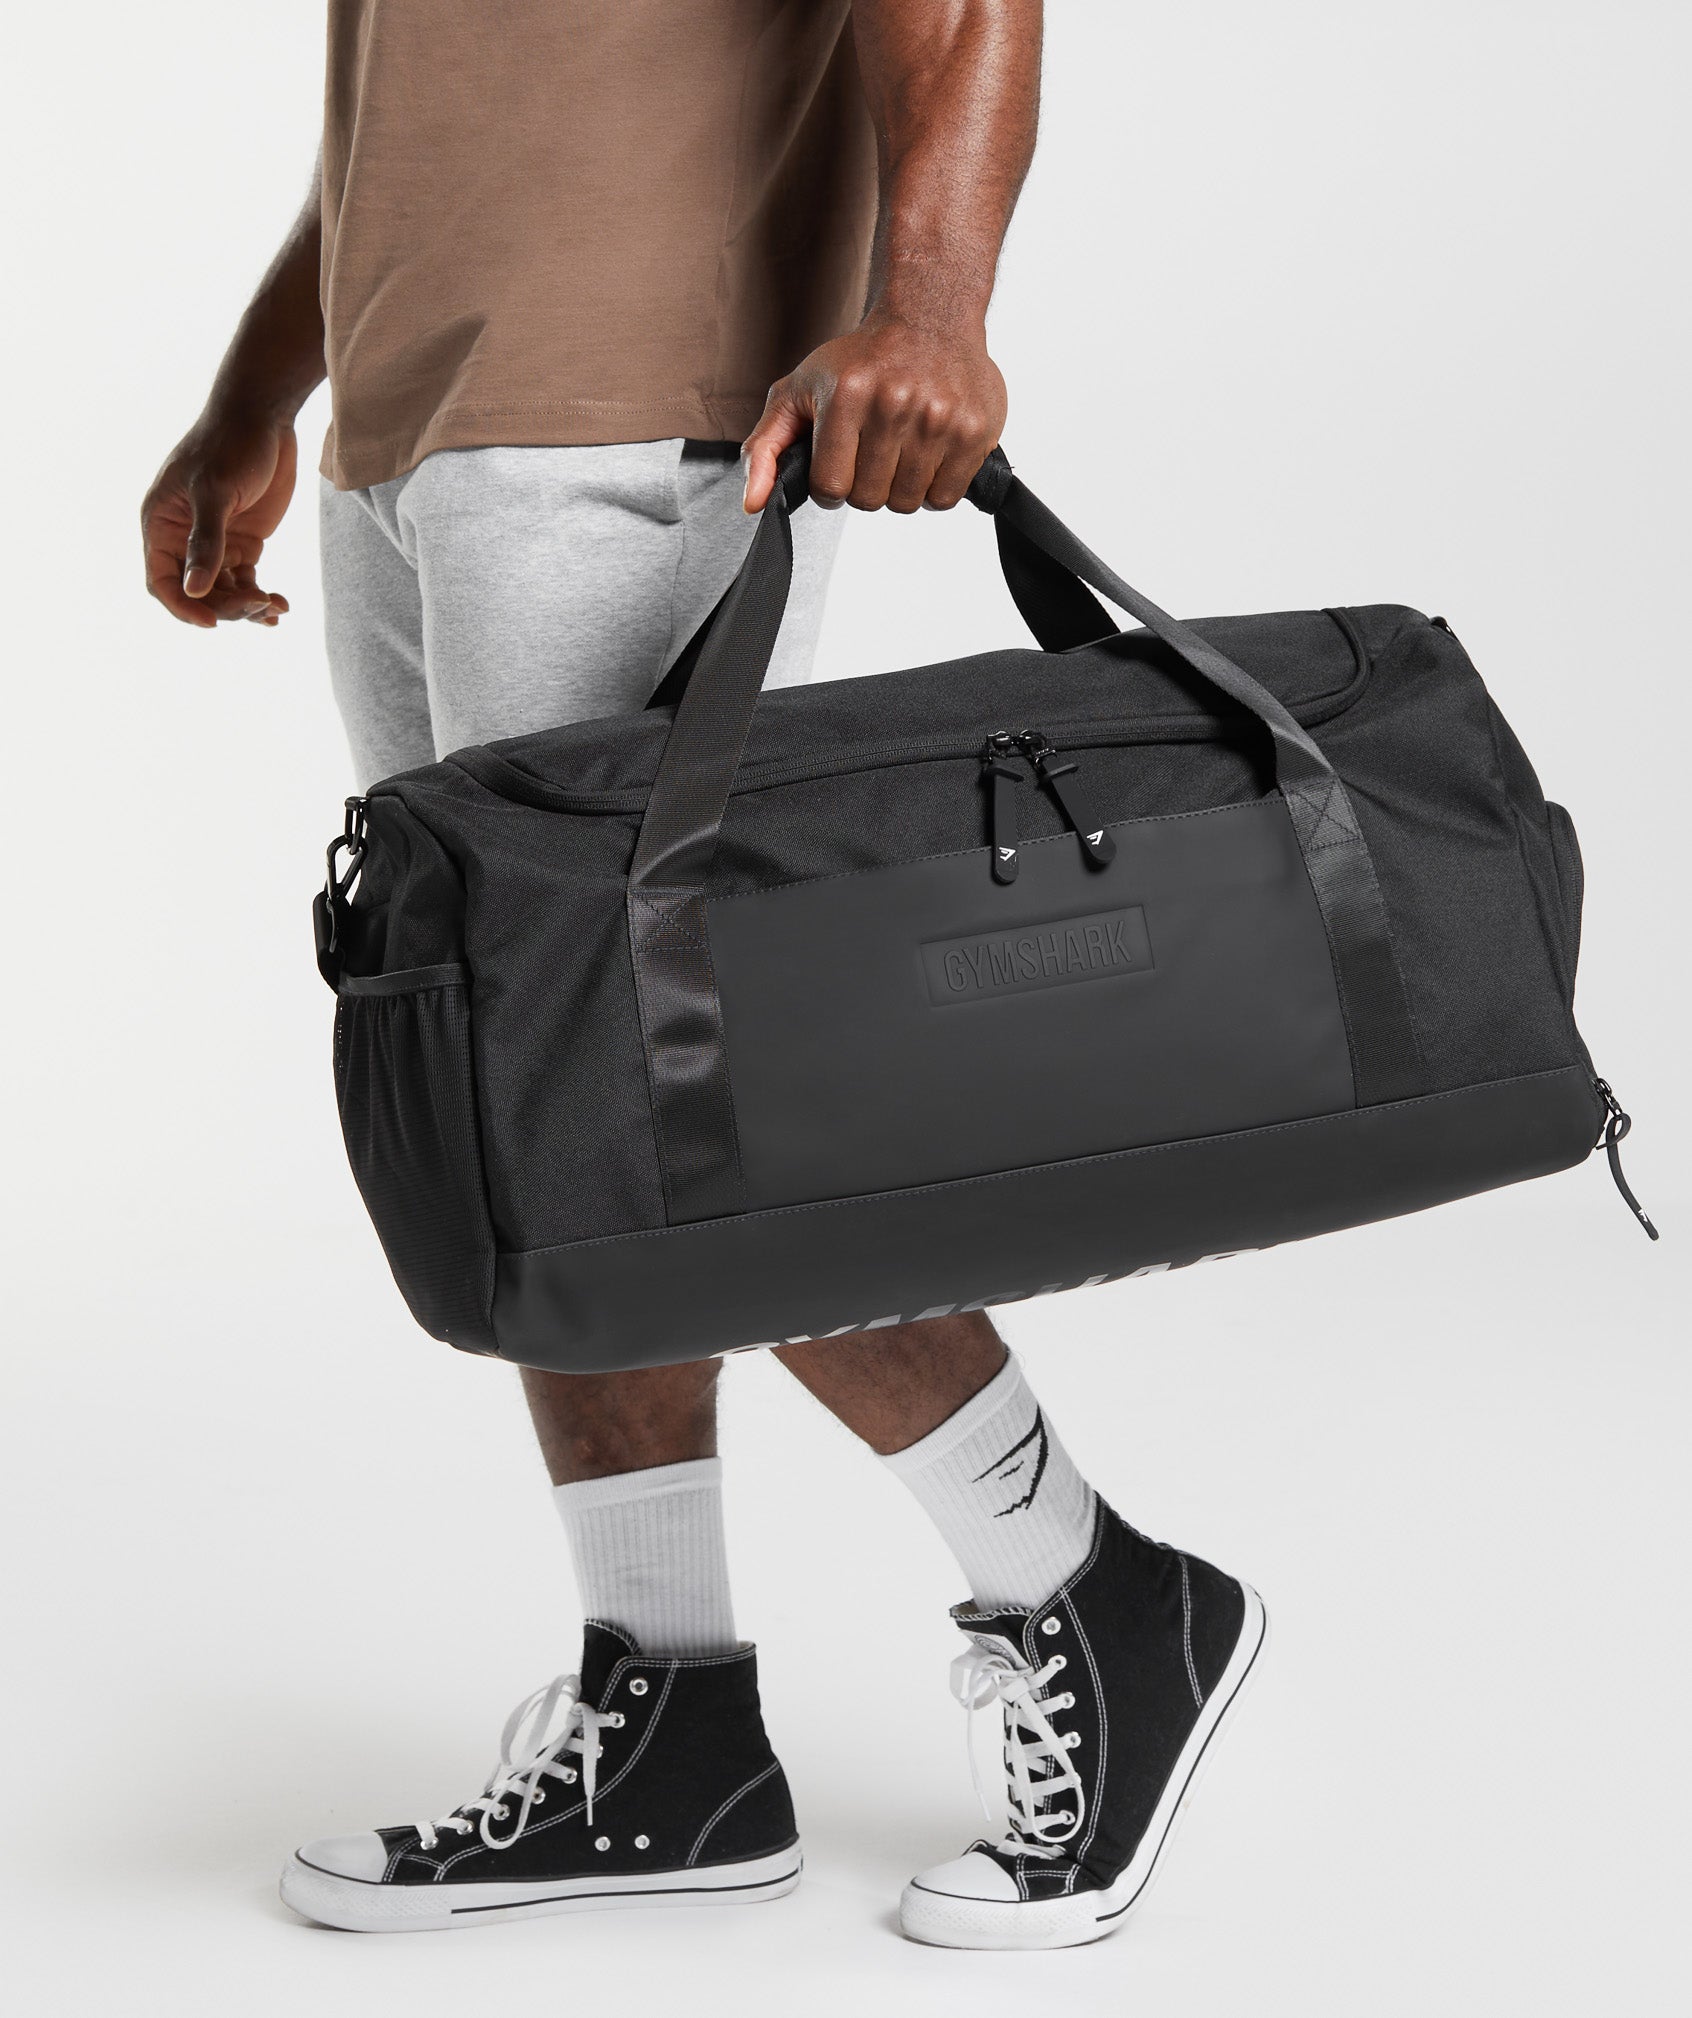 Men's Workout & Gym Bag Essentials - Gymshark